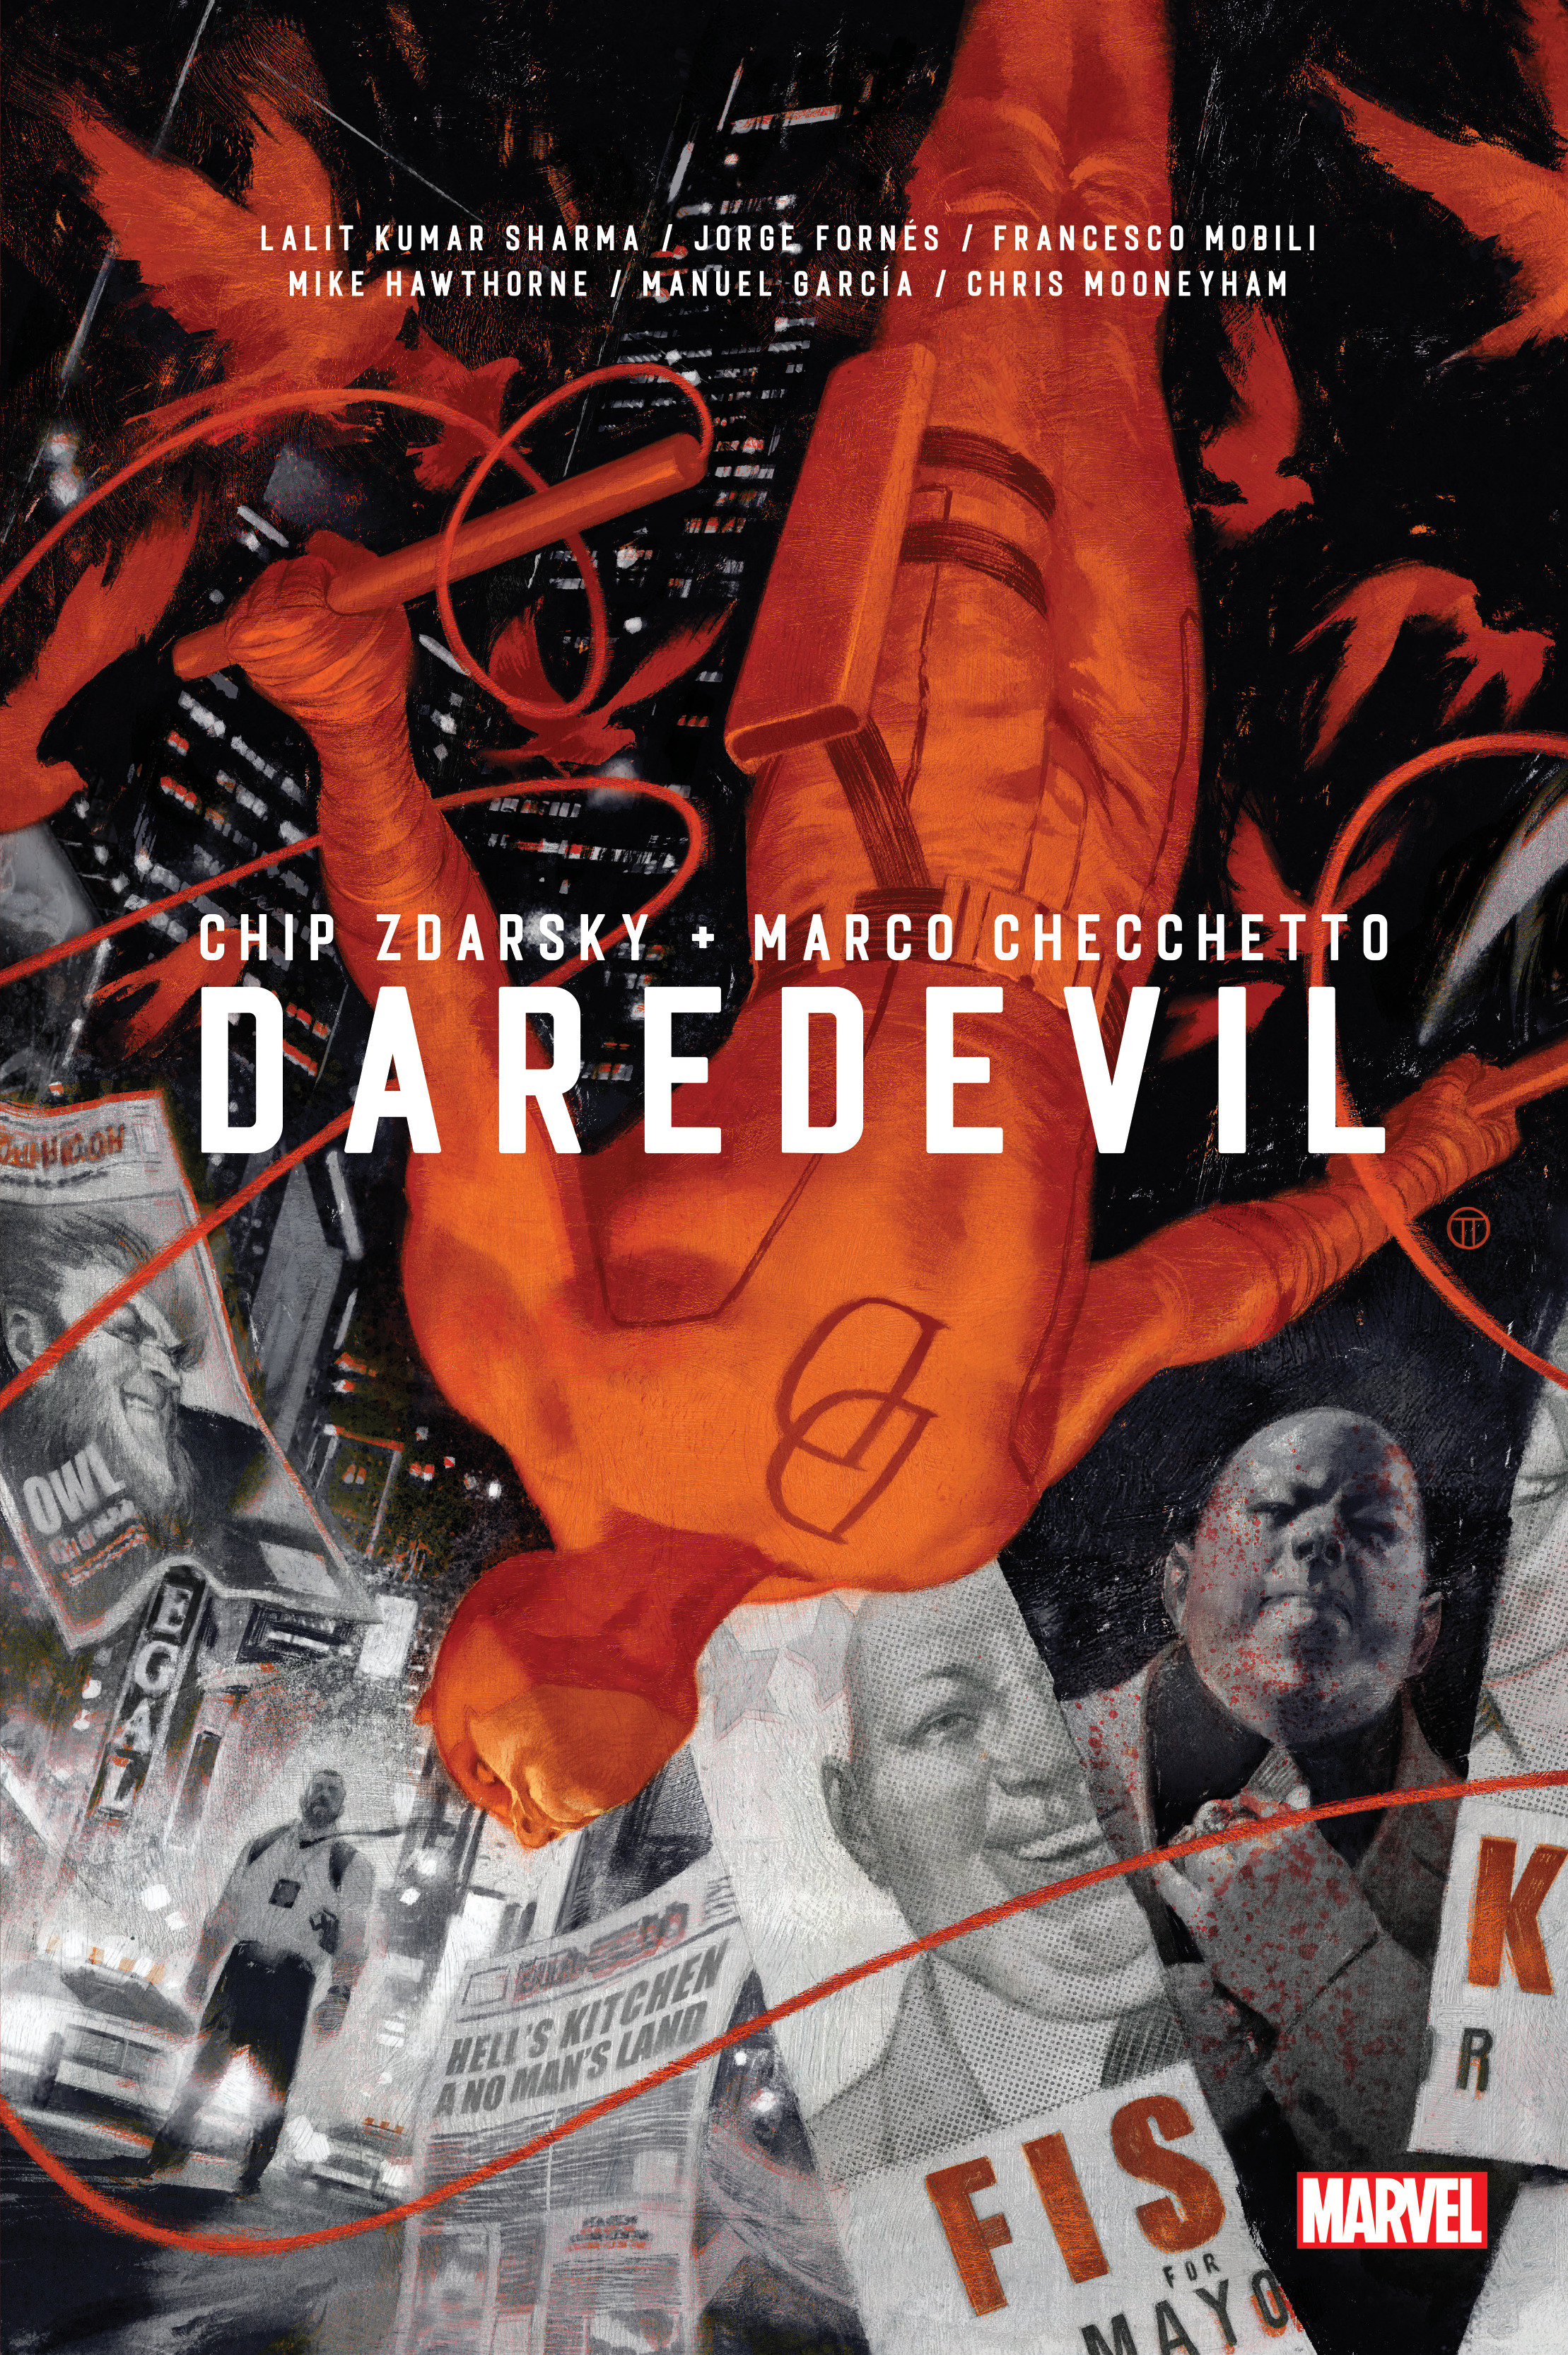 Daredevil by Chip Zdarsky Omnibus Hardcover Graphic Novel Volume 1